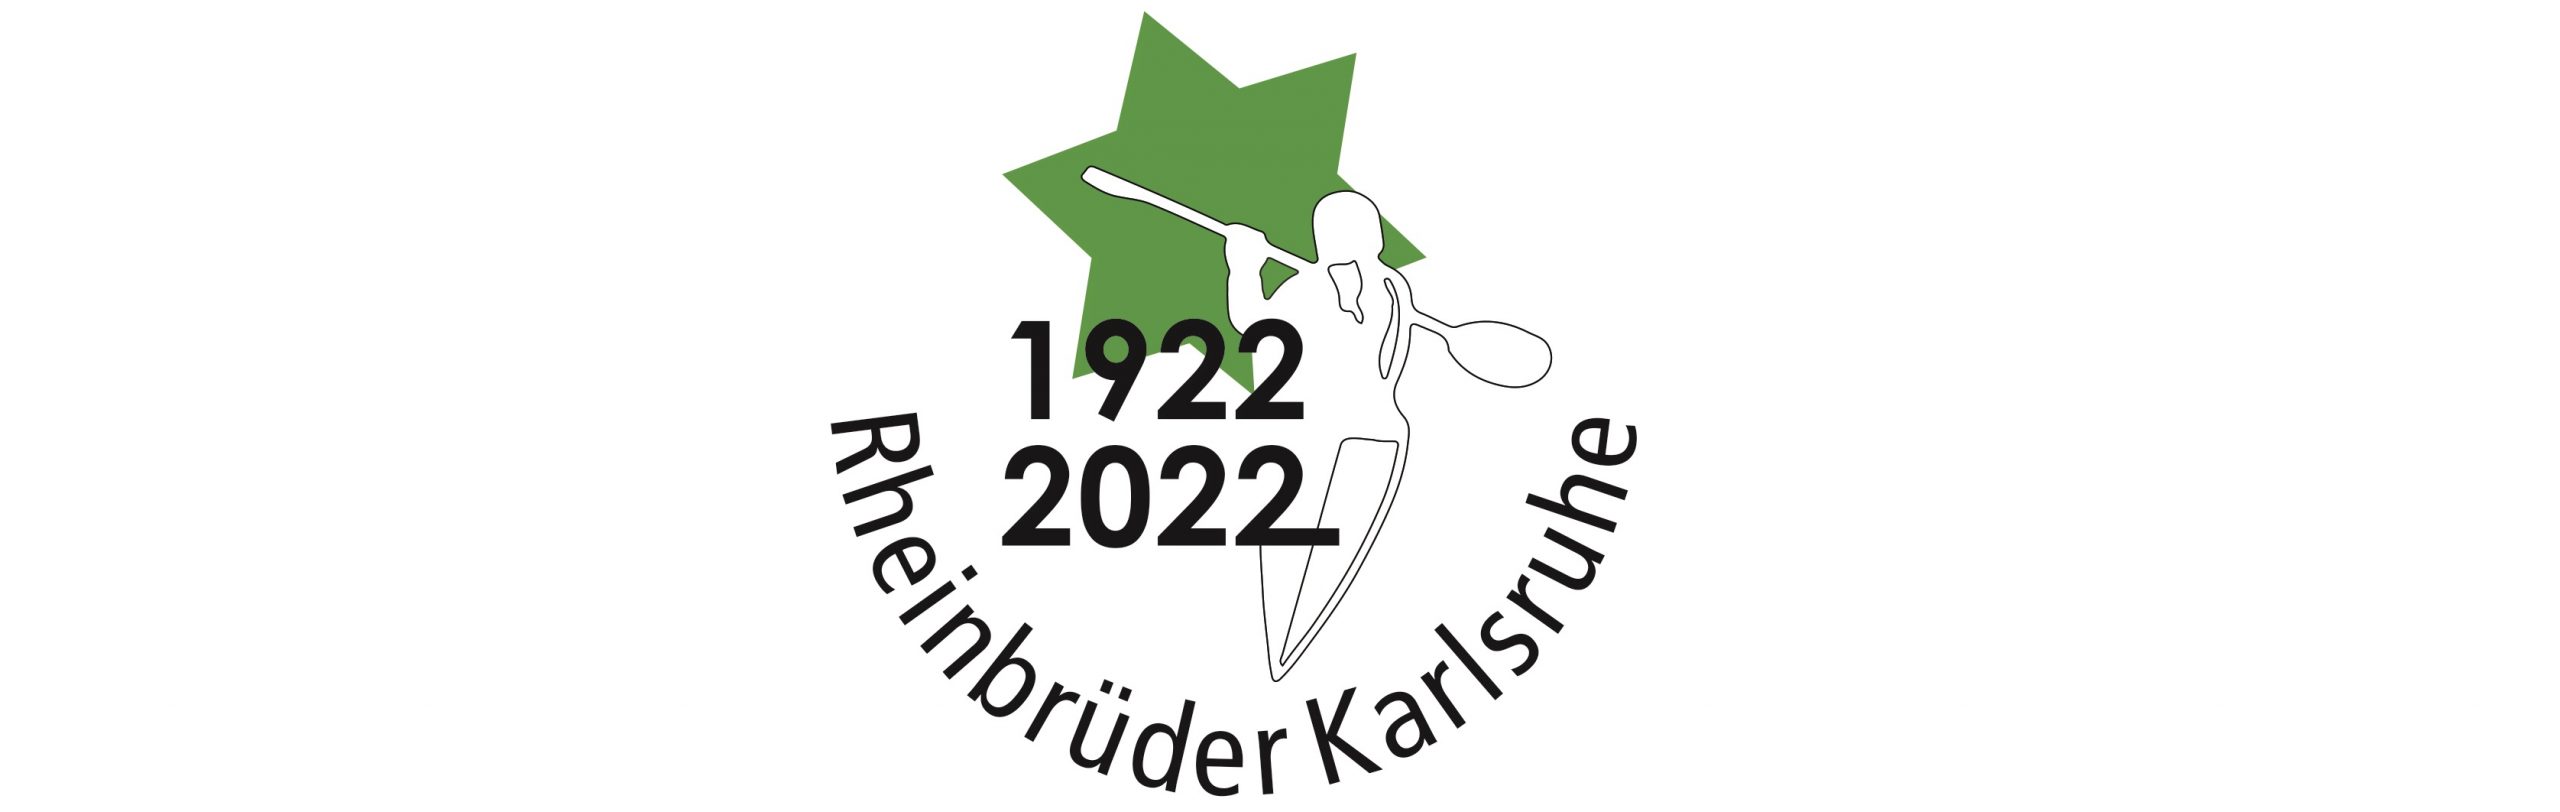 100 Jahre Rheinbrüder Karlsruhe